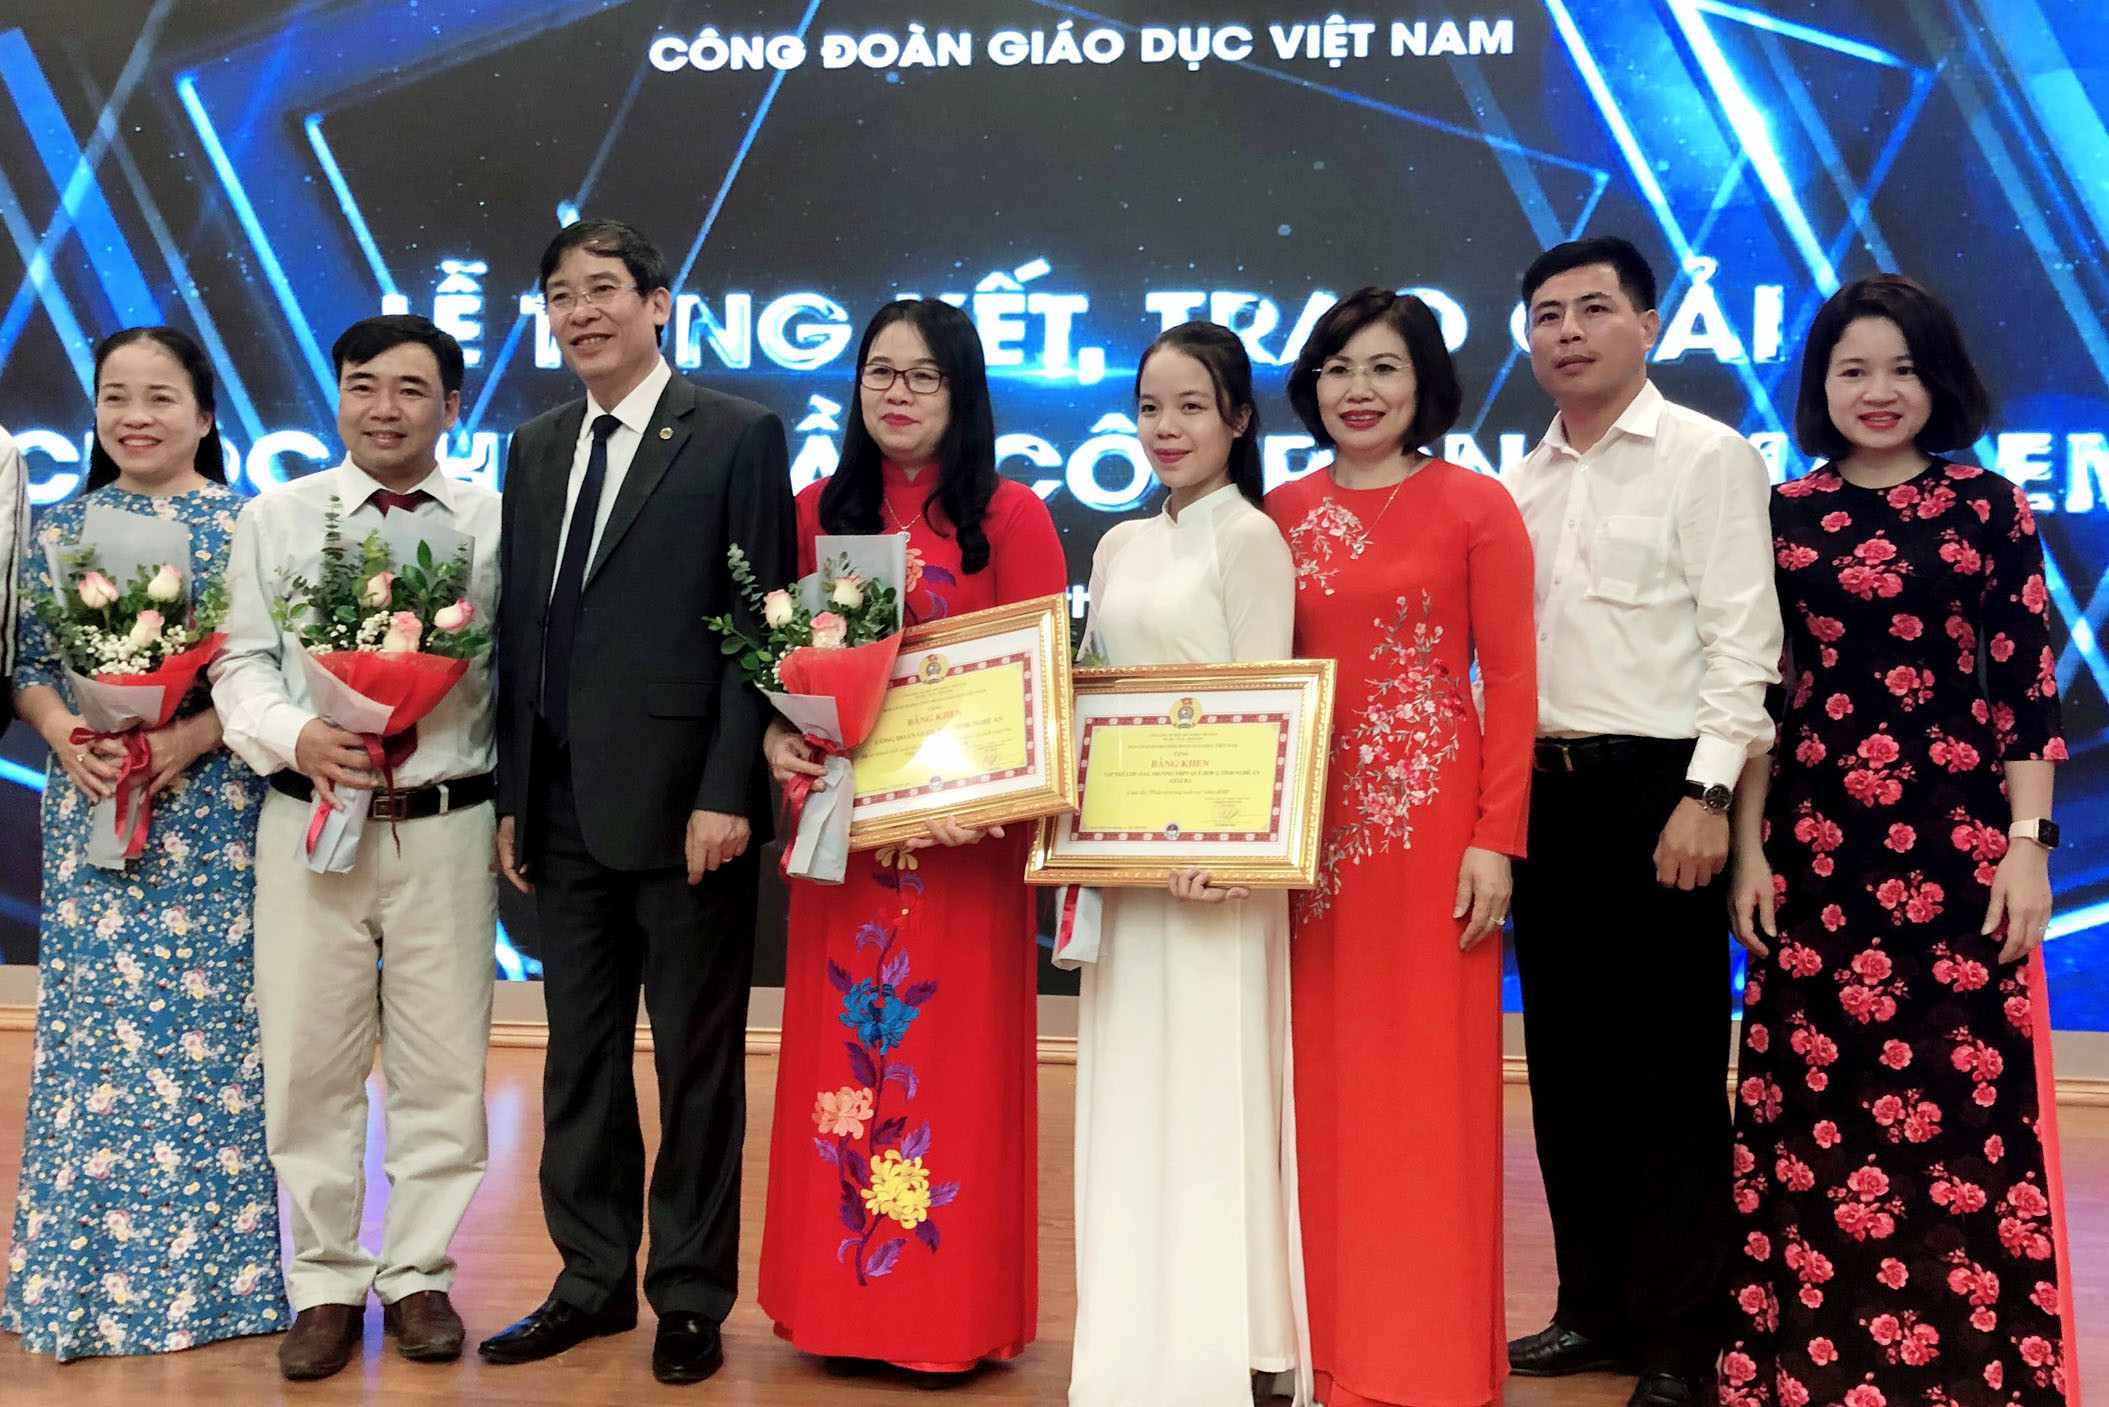 Chủ tịch Công đoàn ngành giáo dục Việt Nam trao giải và chụp ảnh lưu niệm với đoàn giáo viên, học sinh xứ Nghệ tại lễ trao giải cuộc thi. Ảnh: PV